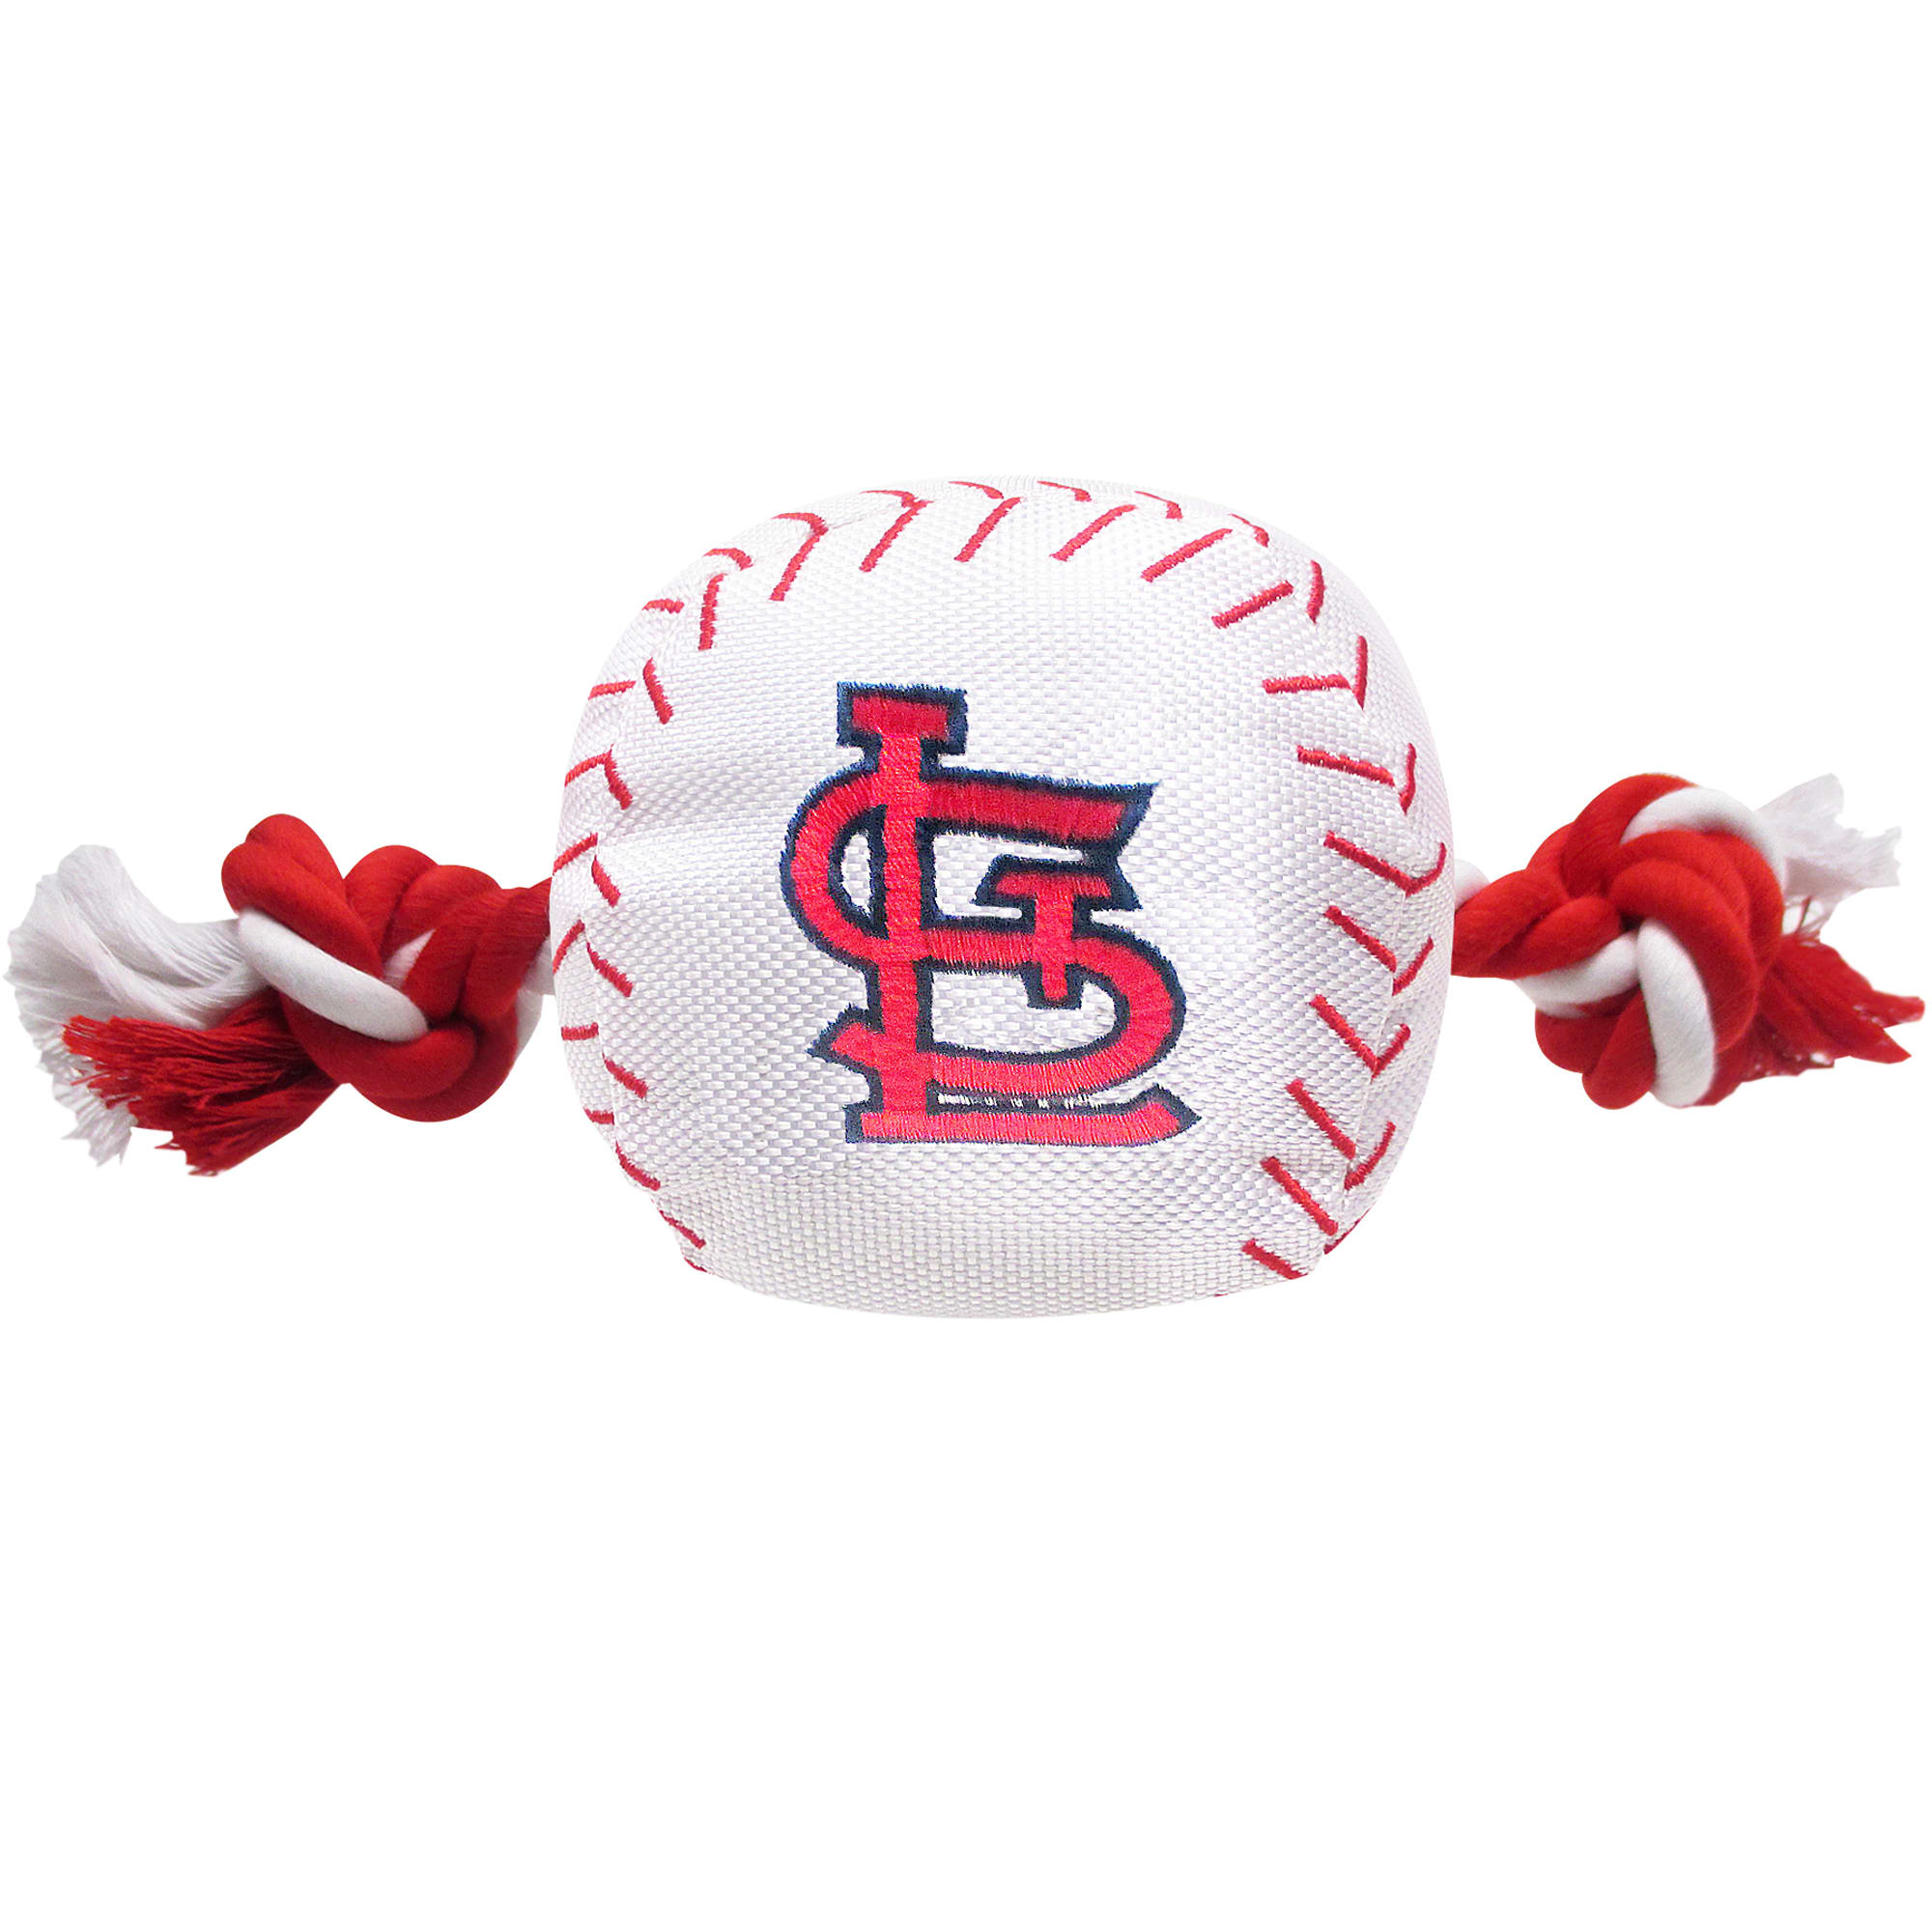 Mlb St. Louis Cardinals Pets First Pet Baseball Jersey - White Xxl : Target